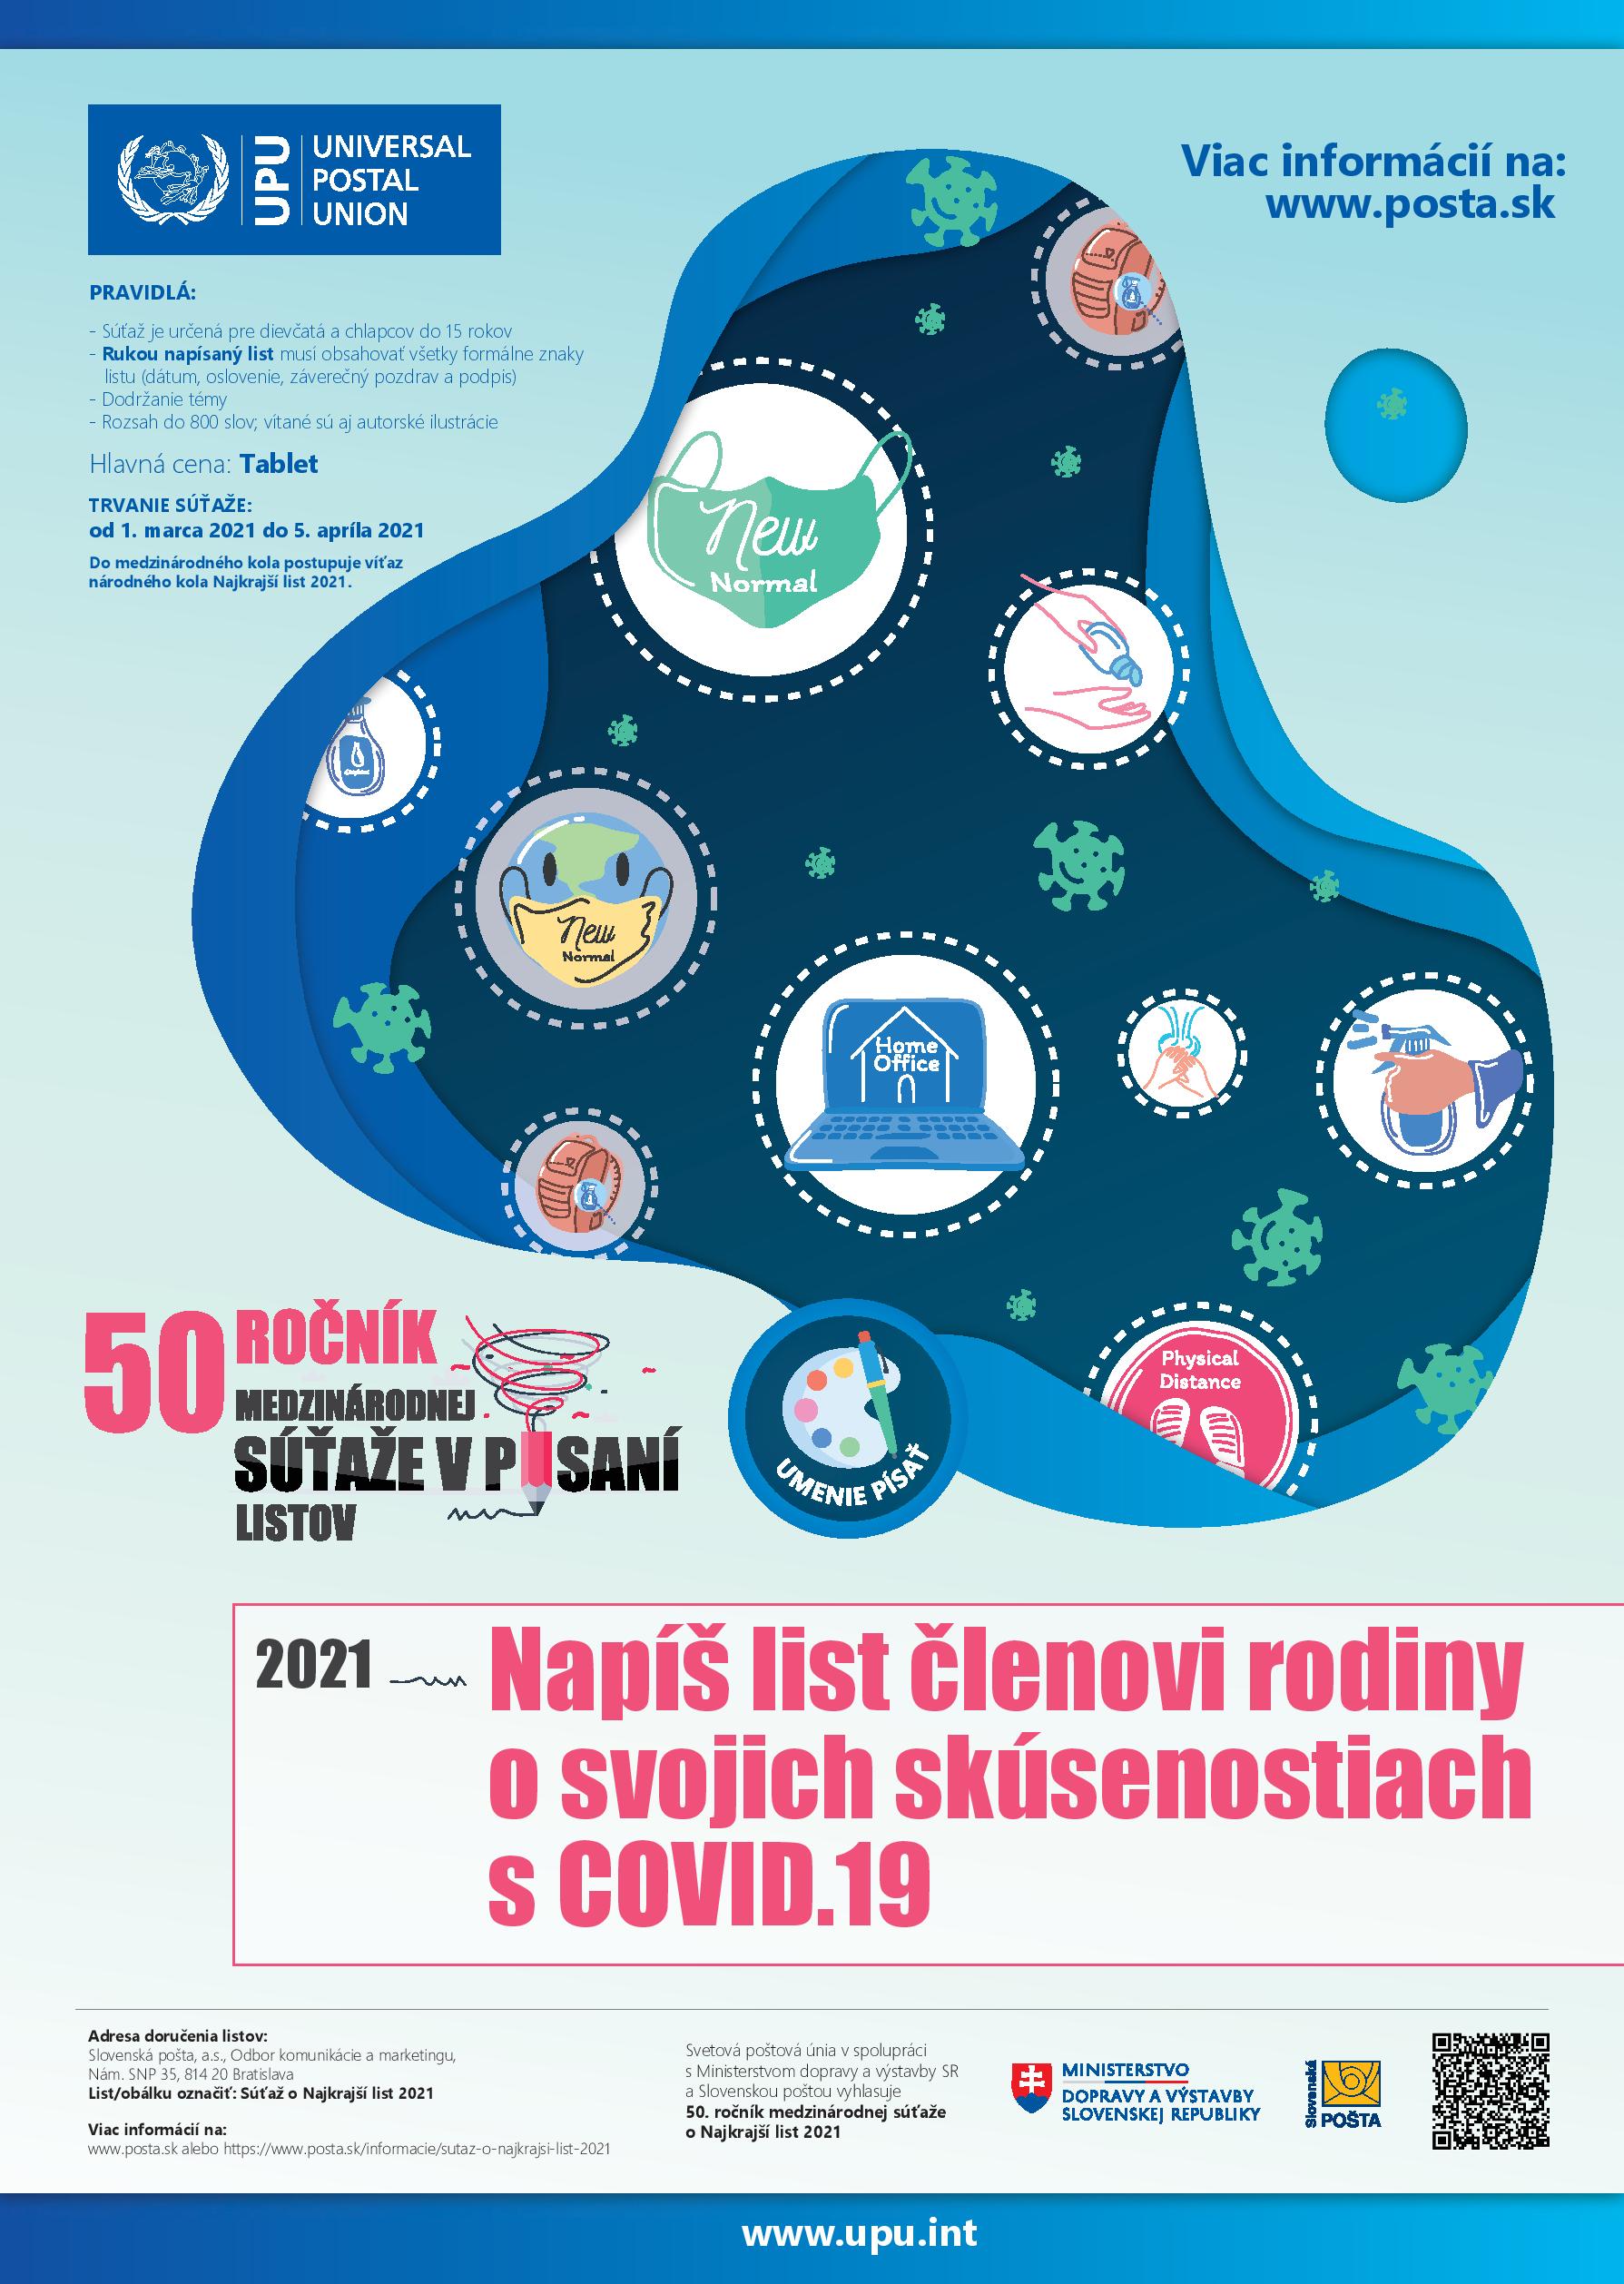 Slovenská pošta - Súťaž o Najkrajší list 2021